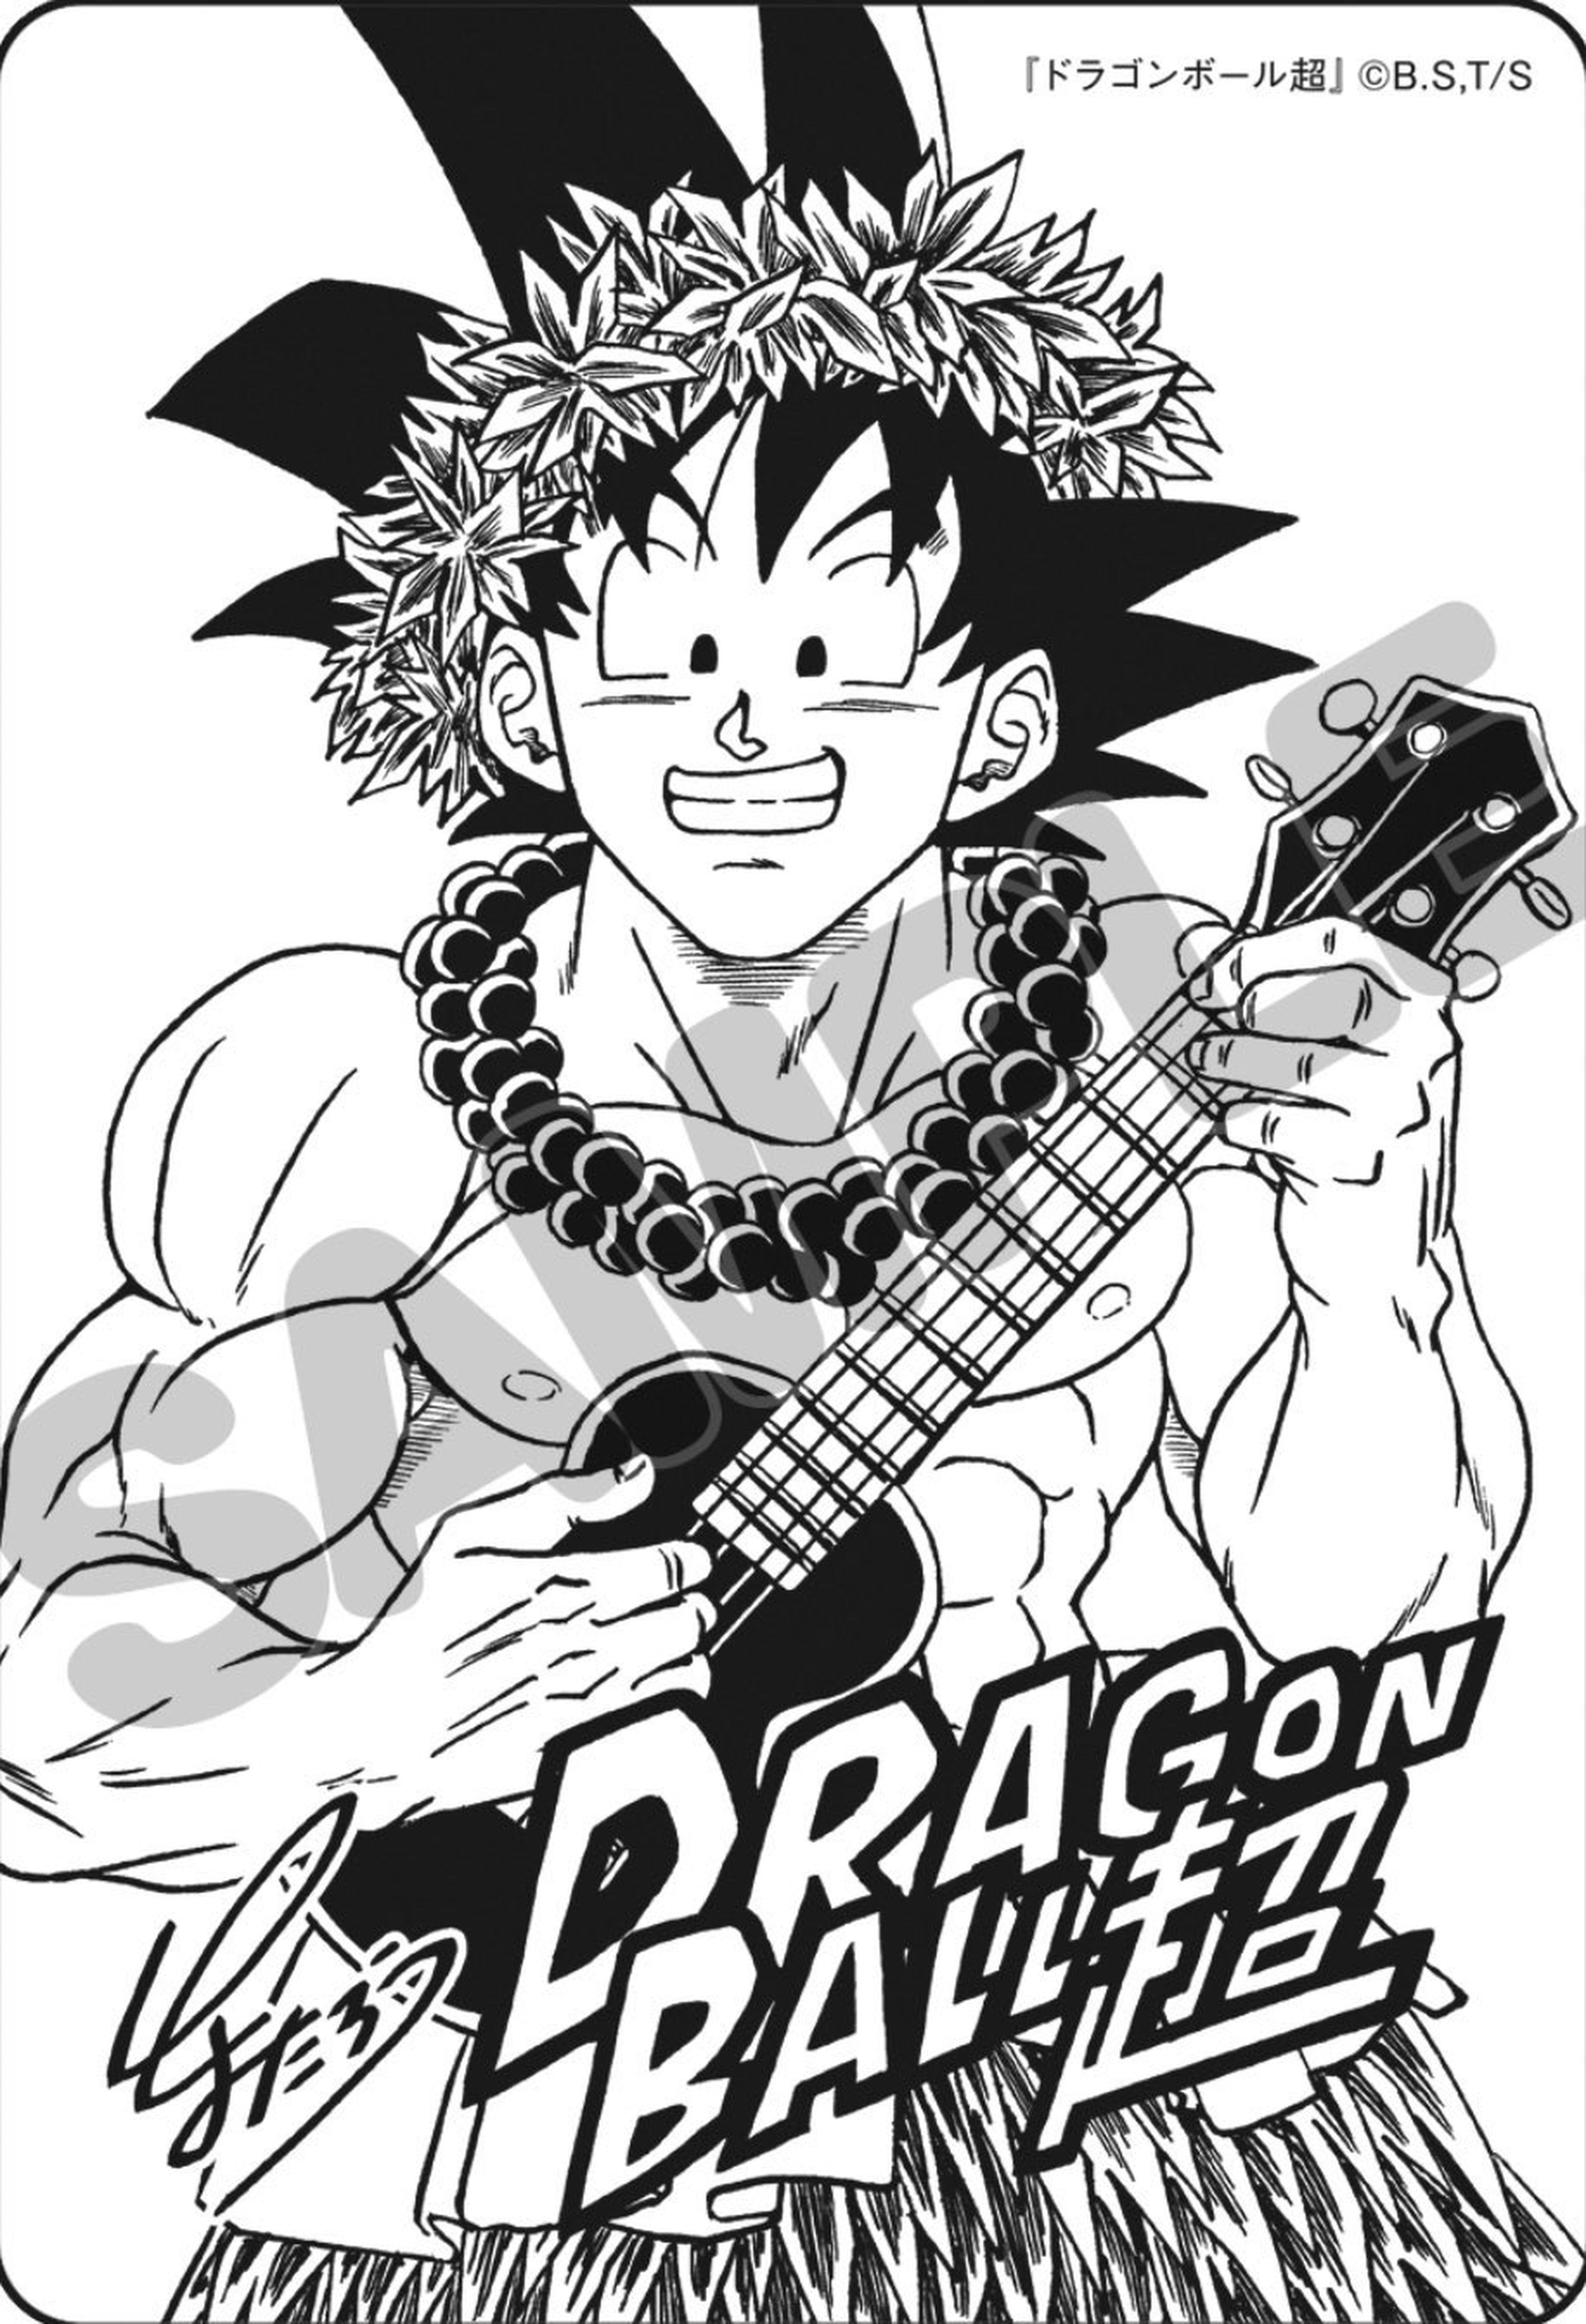 La nueva ilustración veraniega de Son Goku dibujada por Toyotaro en exclusiva